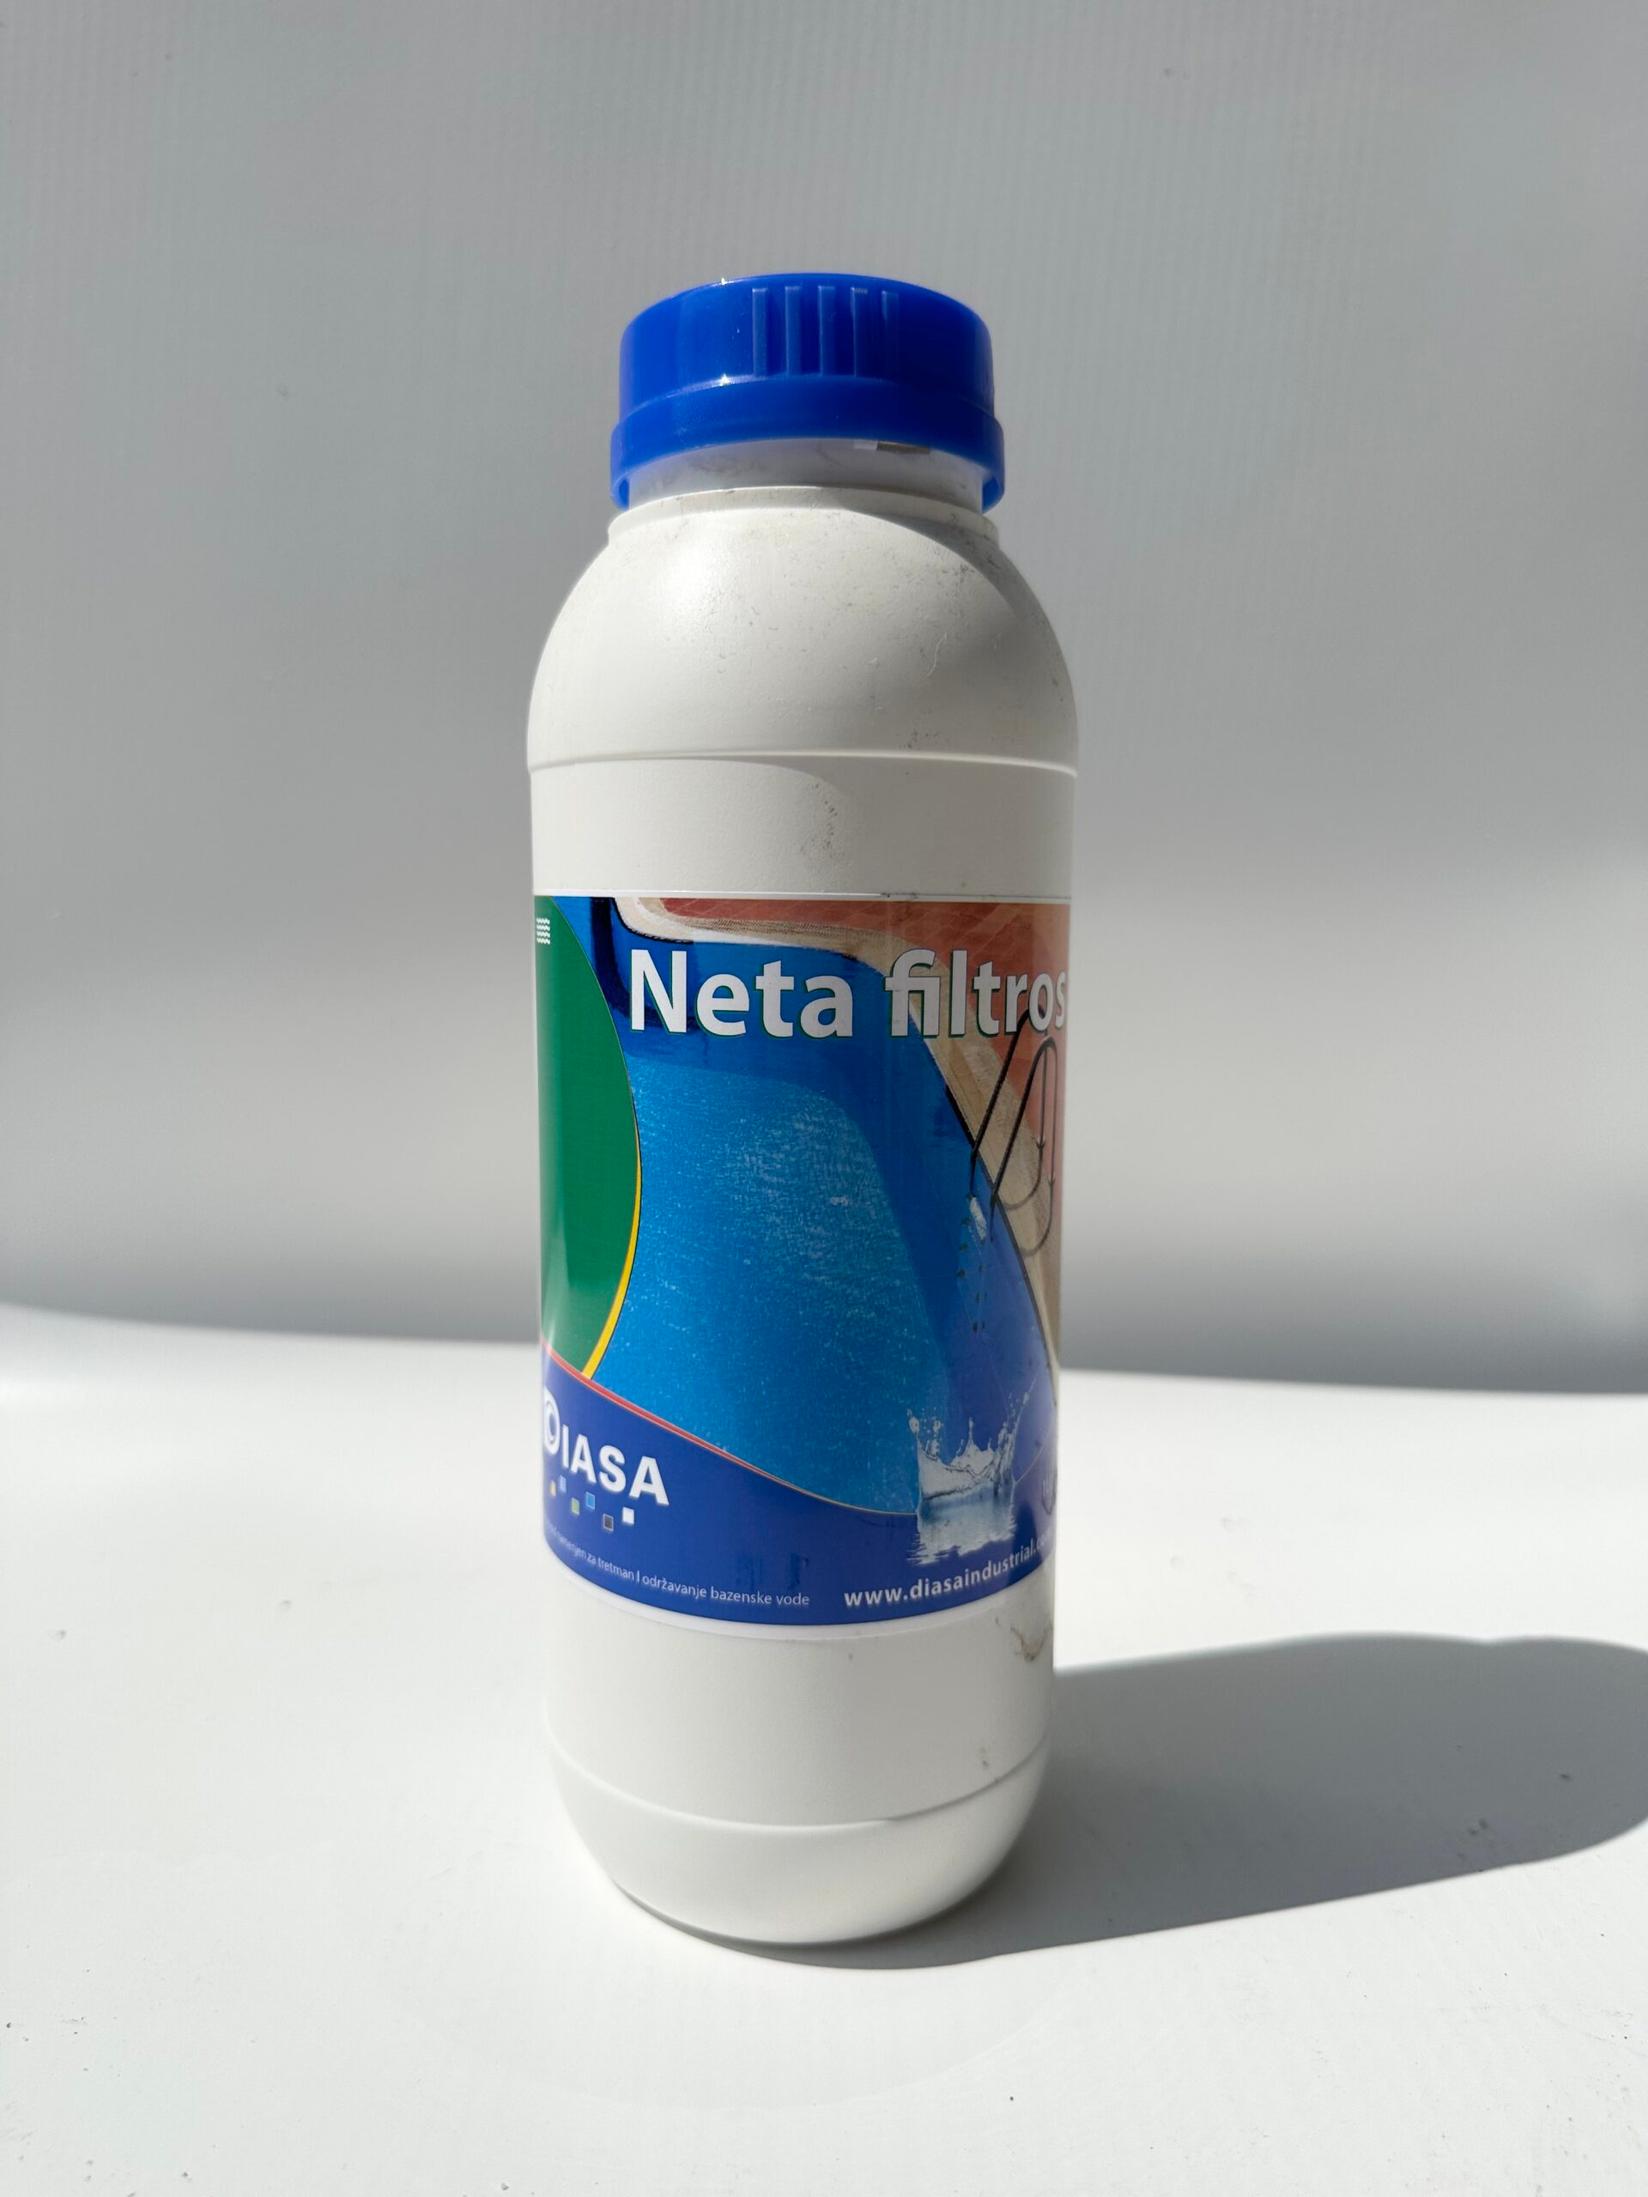 Selected image for DIASA Neta Filtros Sredstvo za čišćenje filtera bazena, 1l